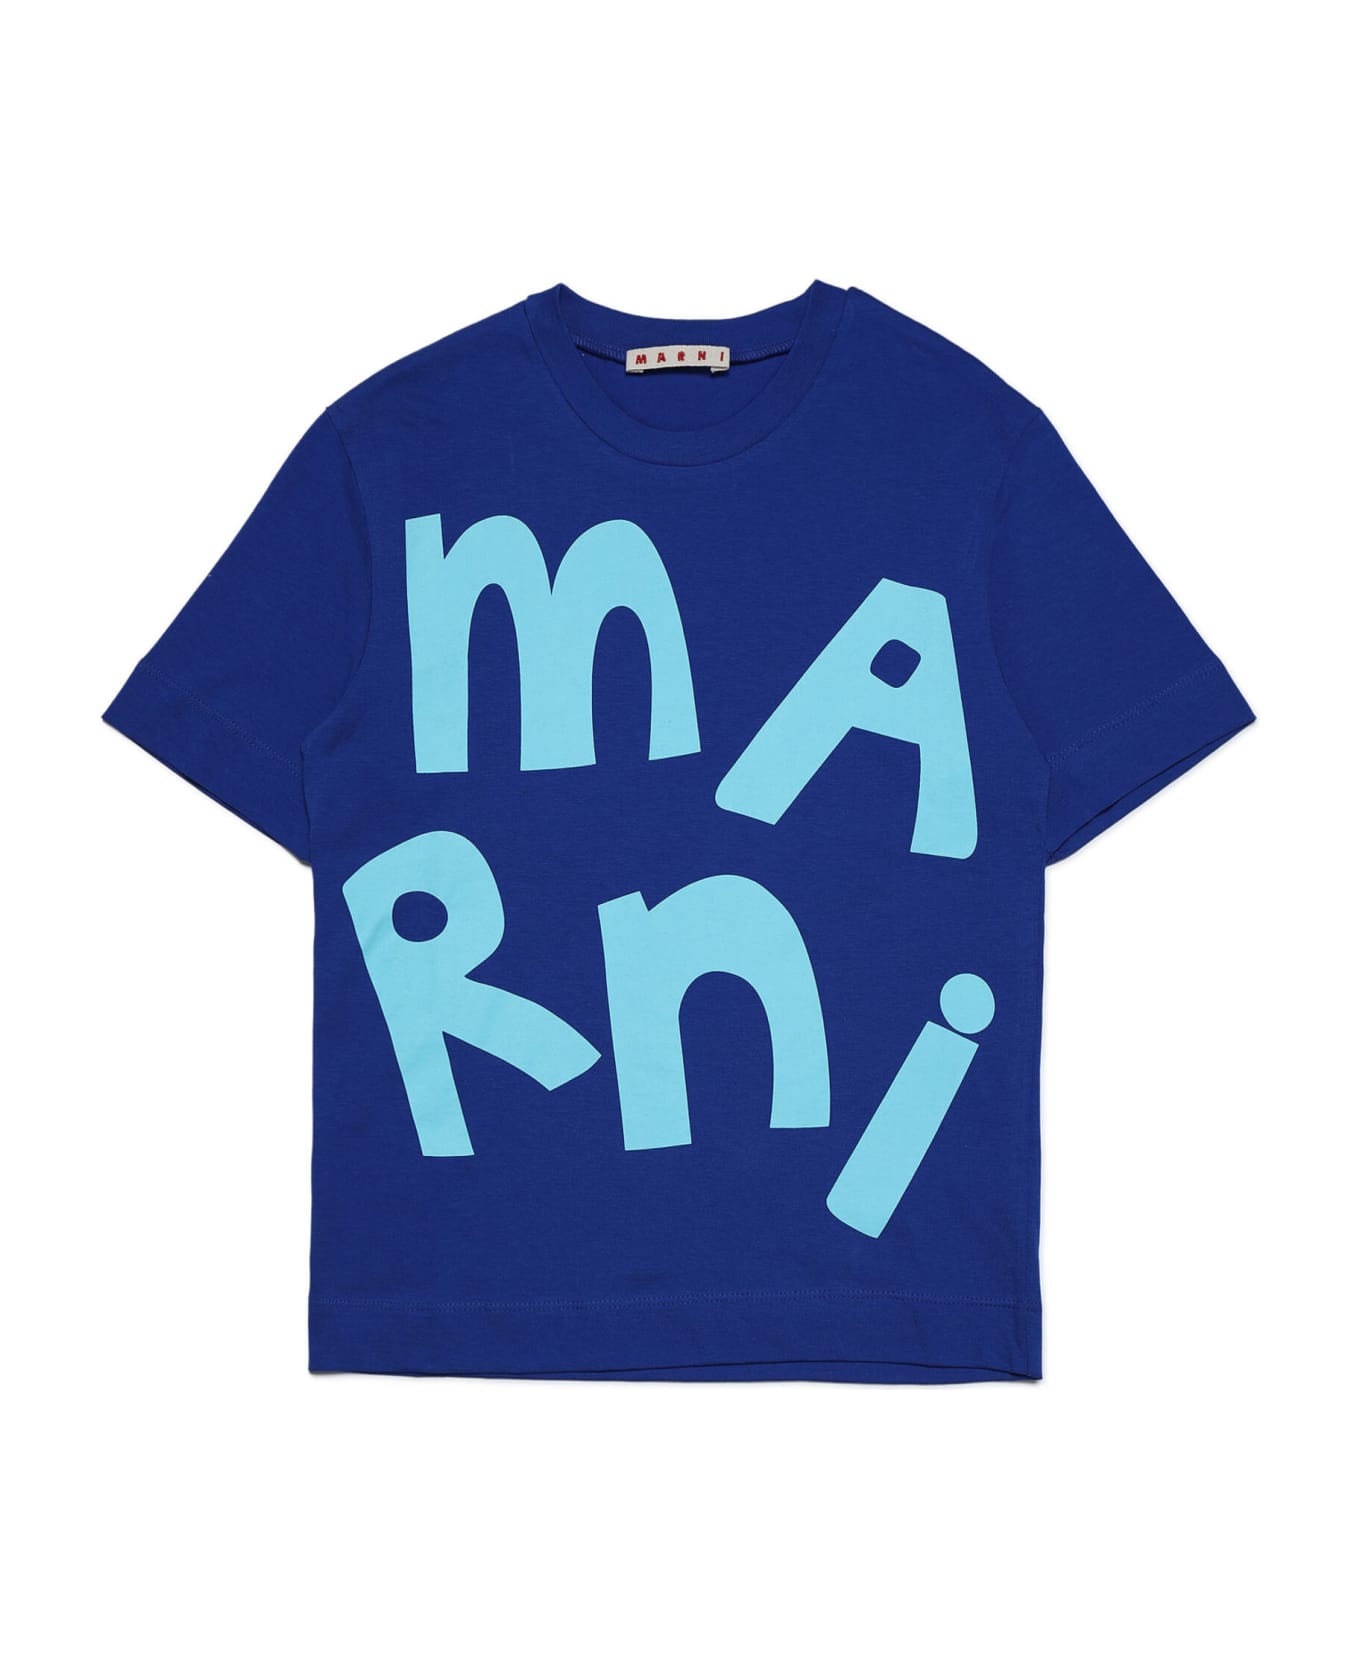 Marni Mt143u T-shirt Marni - Surf bluette